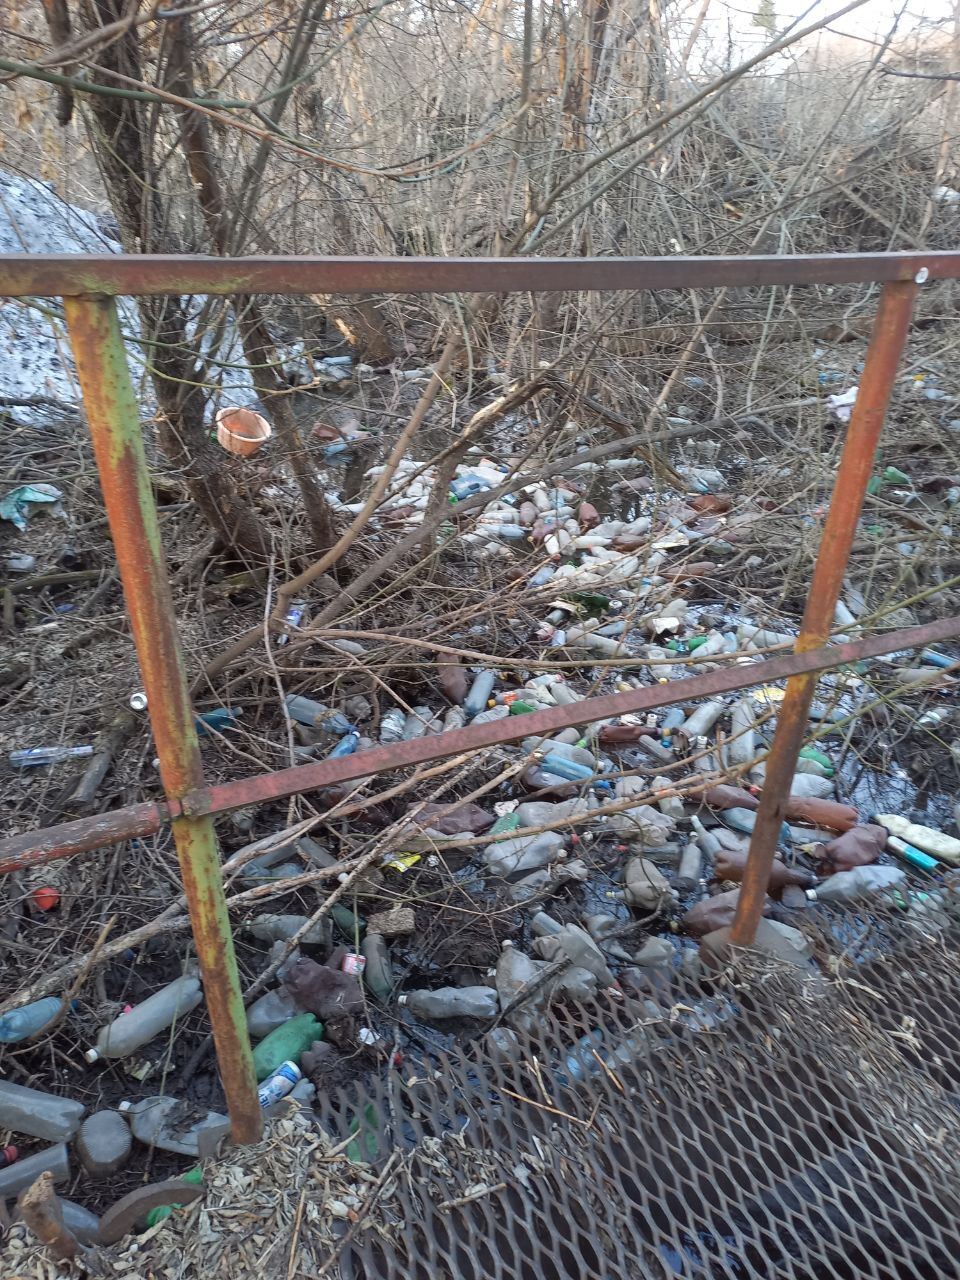 Сток в Новокузнецке превратился в кладбище пластиковых бутылок